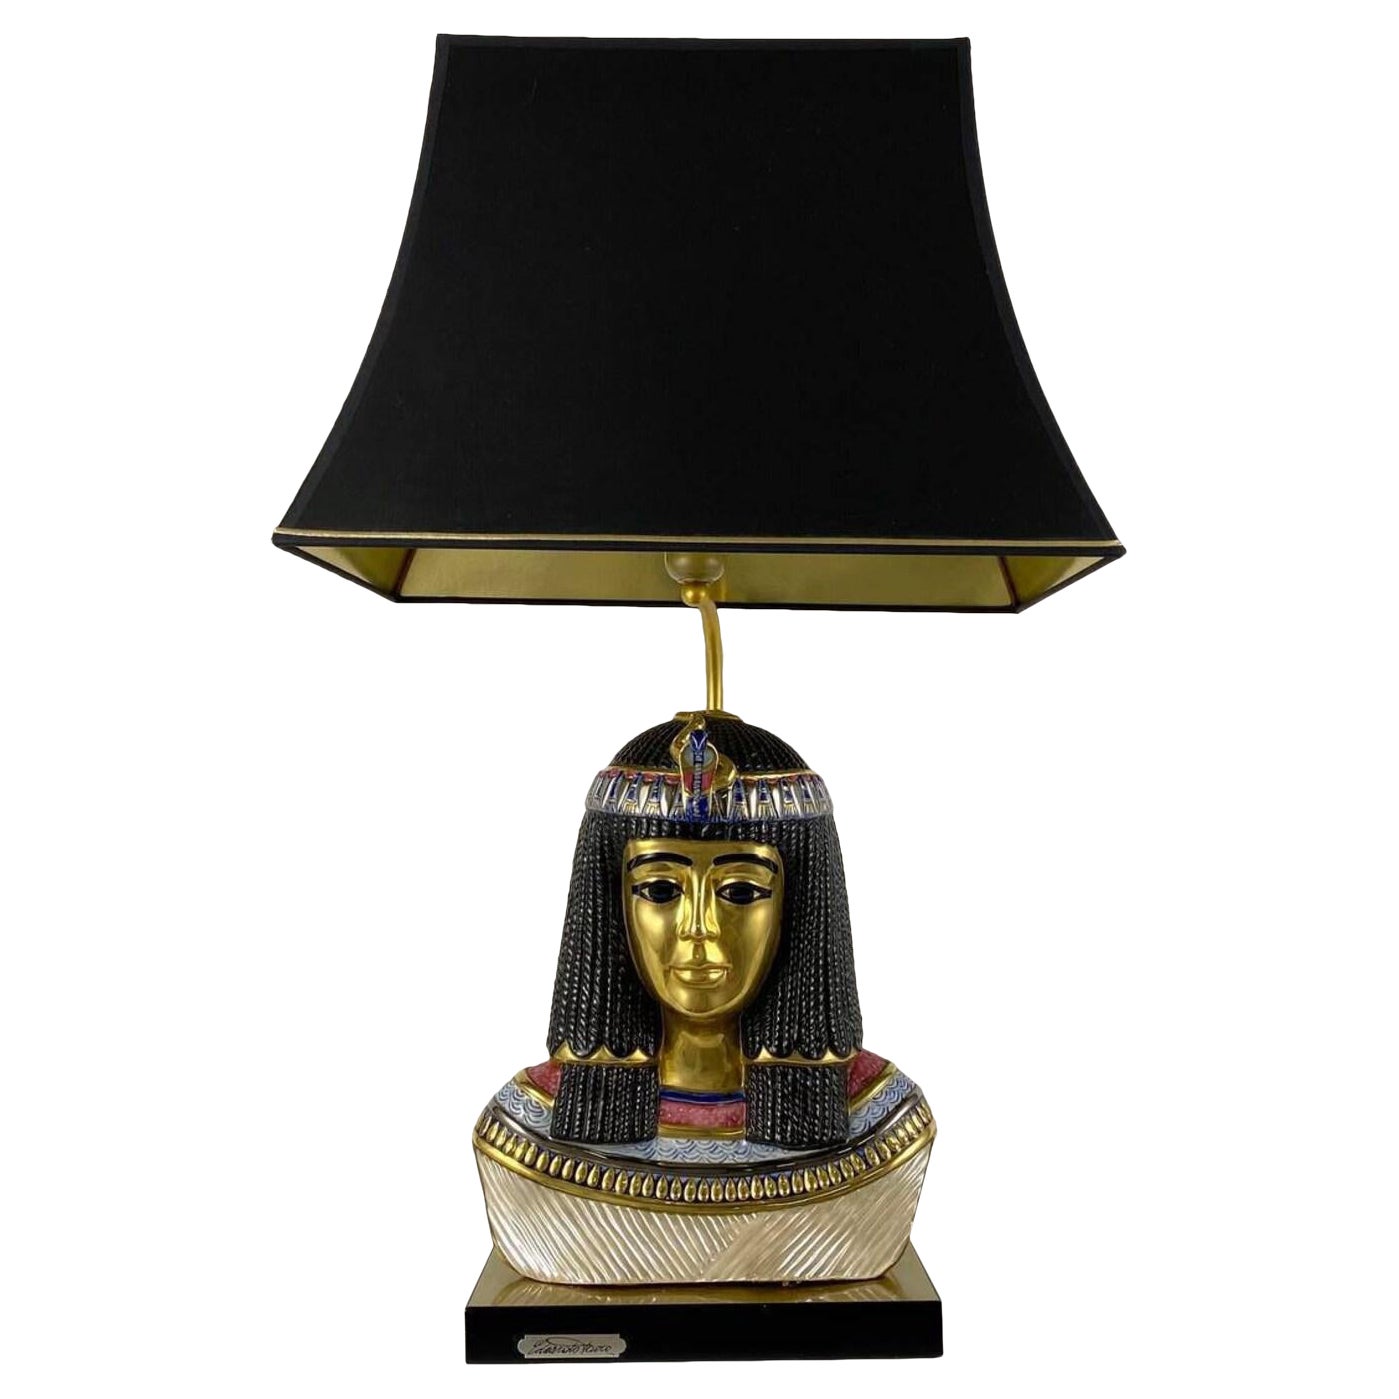 Unique Edoardo Tasca Scultura Viva Table Lamp, Egyptian Pharoh Queen Bust, Italy For Sale